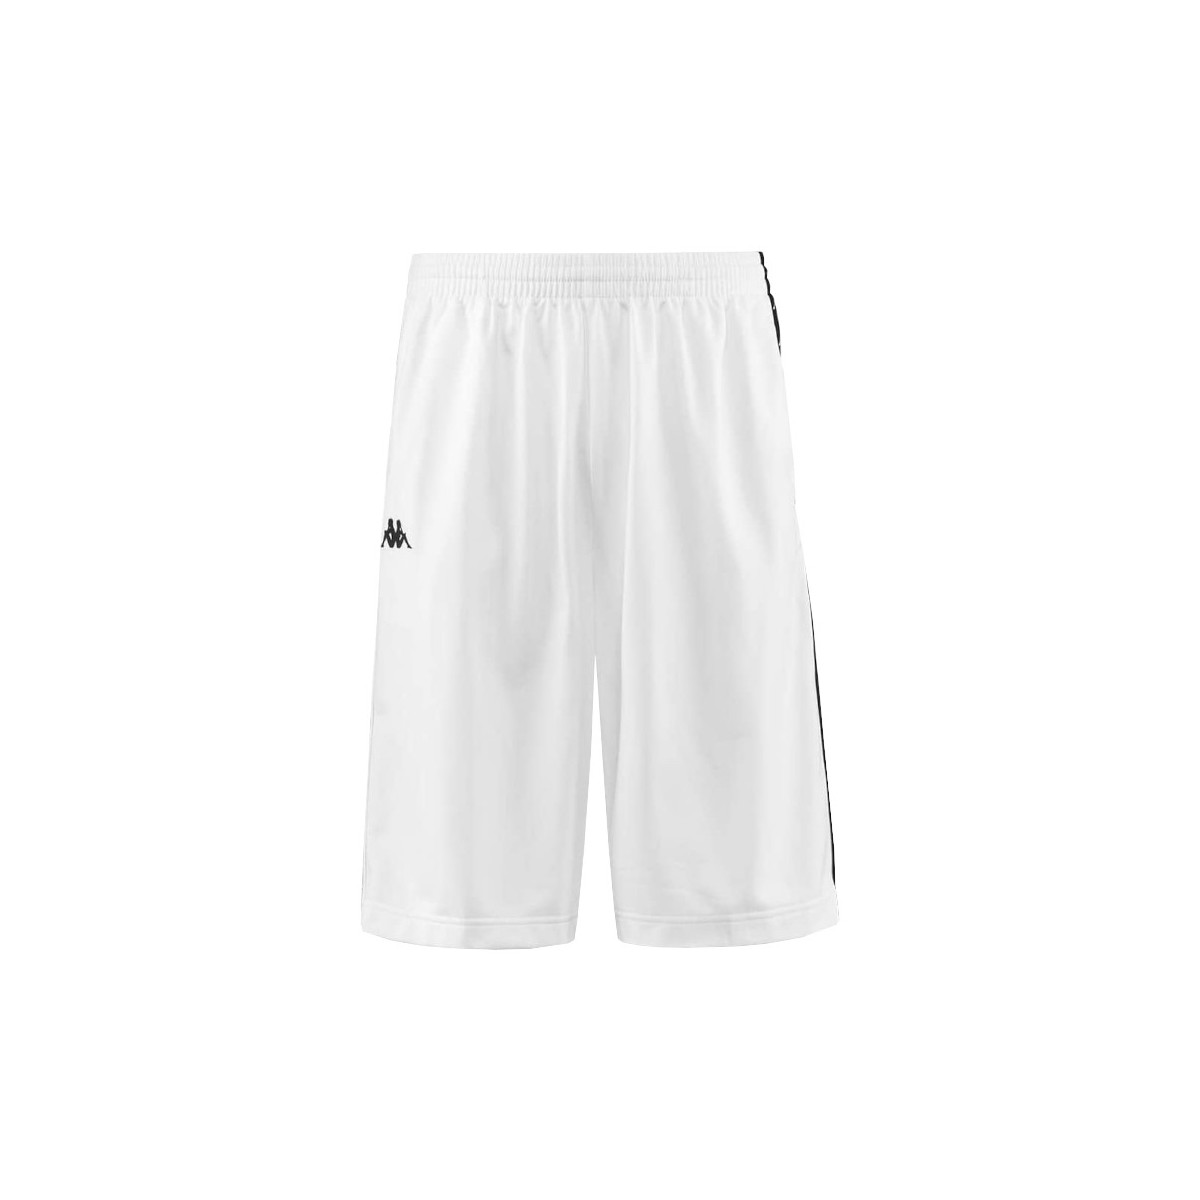 Textil Muži Tříčtvrteční kalhoty Kappa Banda Treadwell Shorts Bílá